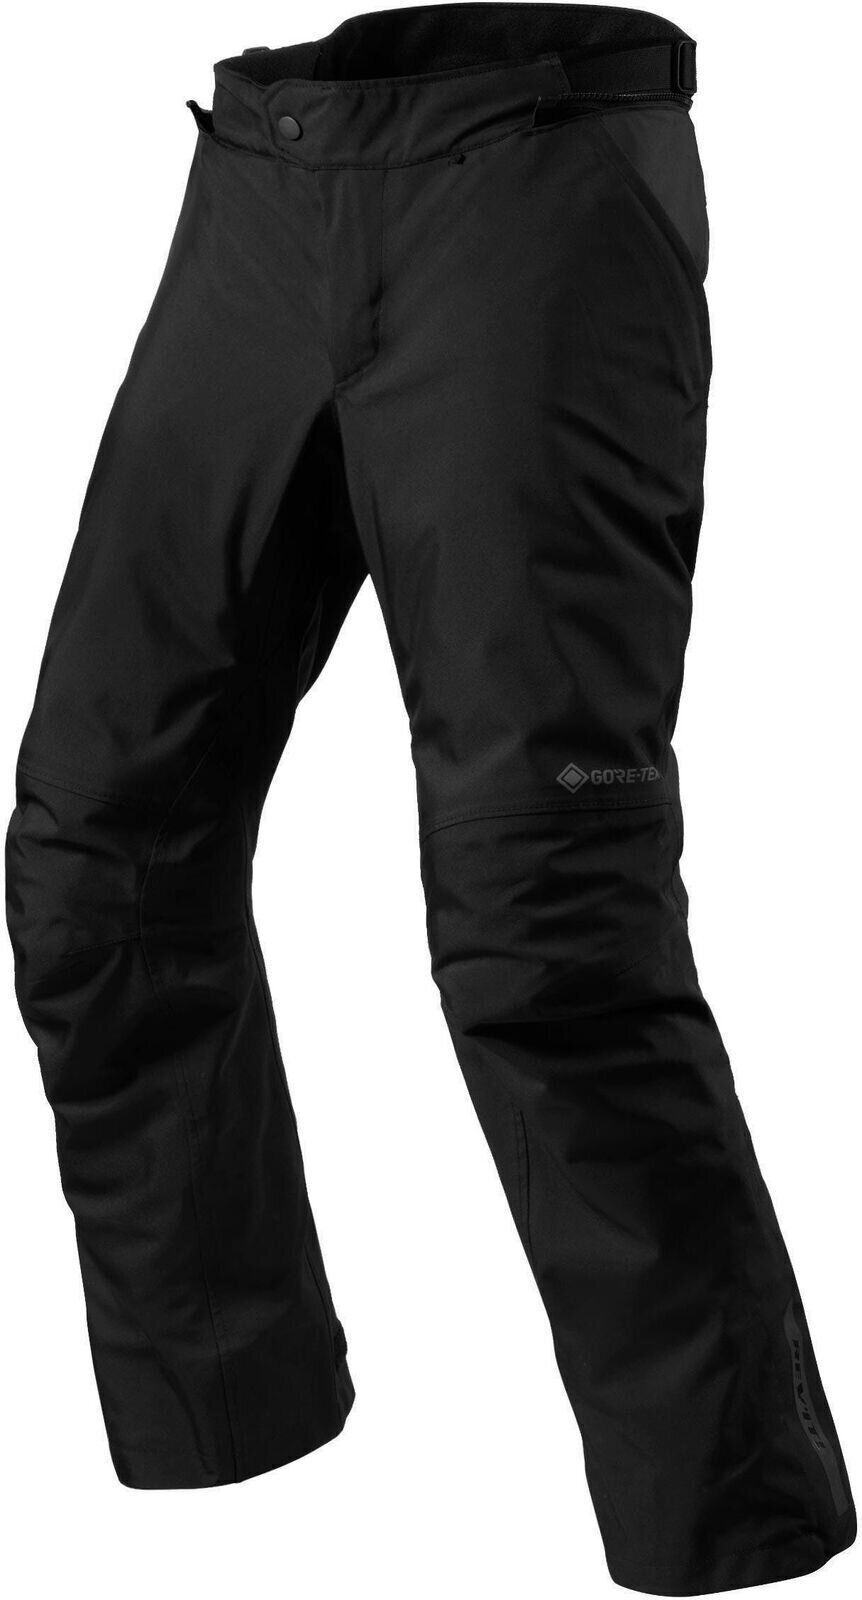 Textiel broek Rev'it! Pants Vertical GTX Black XL Regular Textiel broek